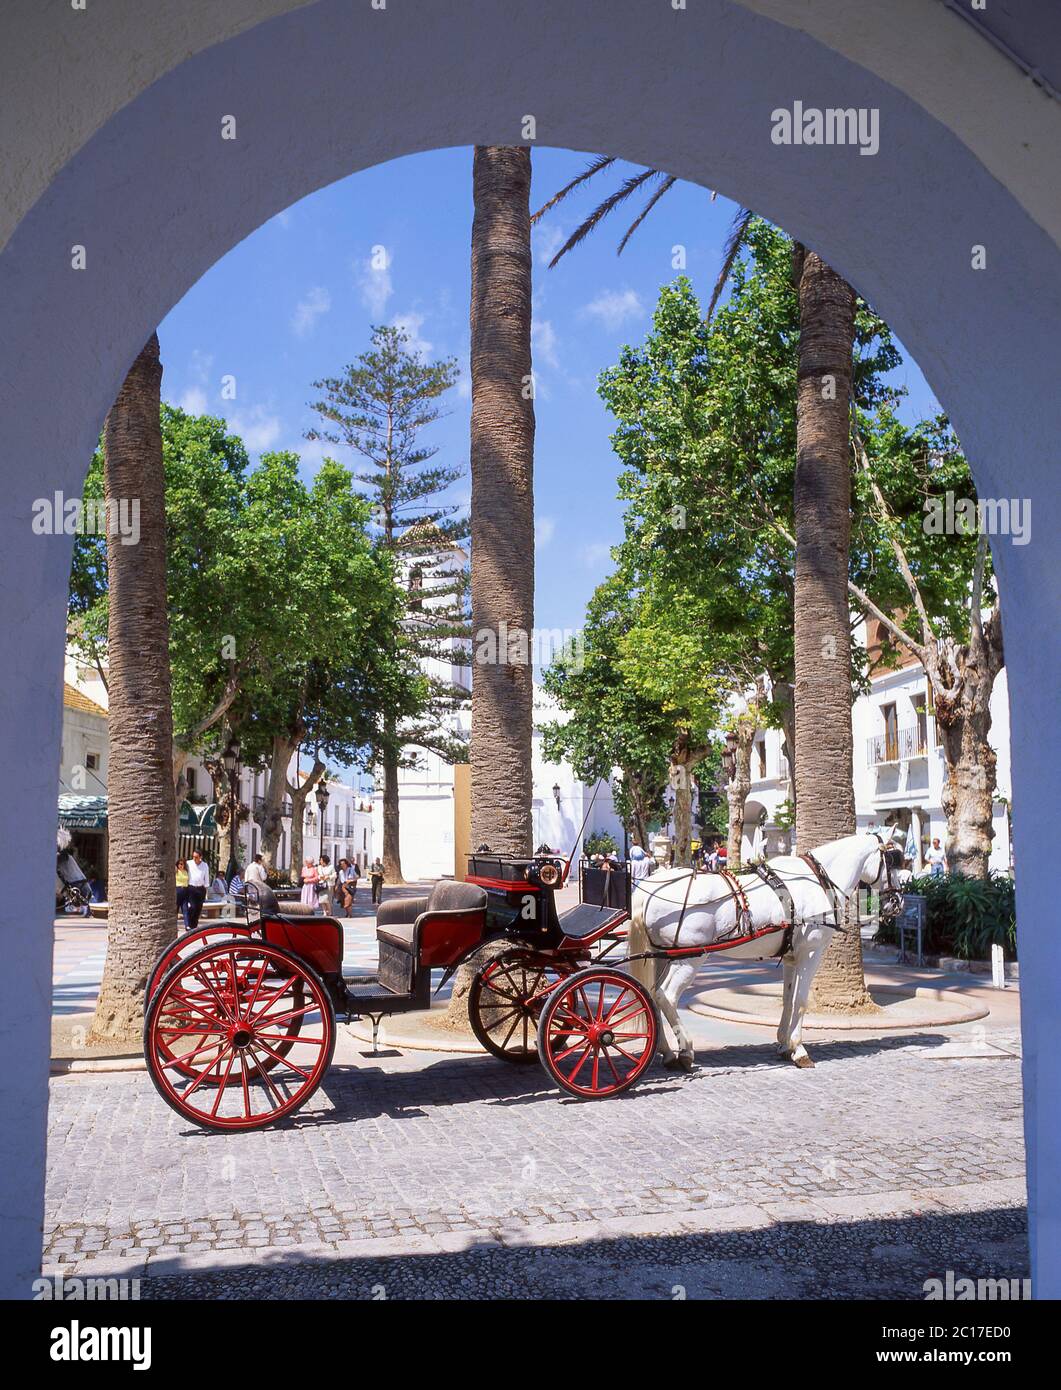 Horse carriage, Plaza Balcon De Europa, Nerja, Costa del Sol, Malaga Province, Andalucia, Spain Stock Photo